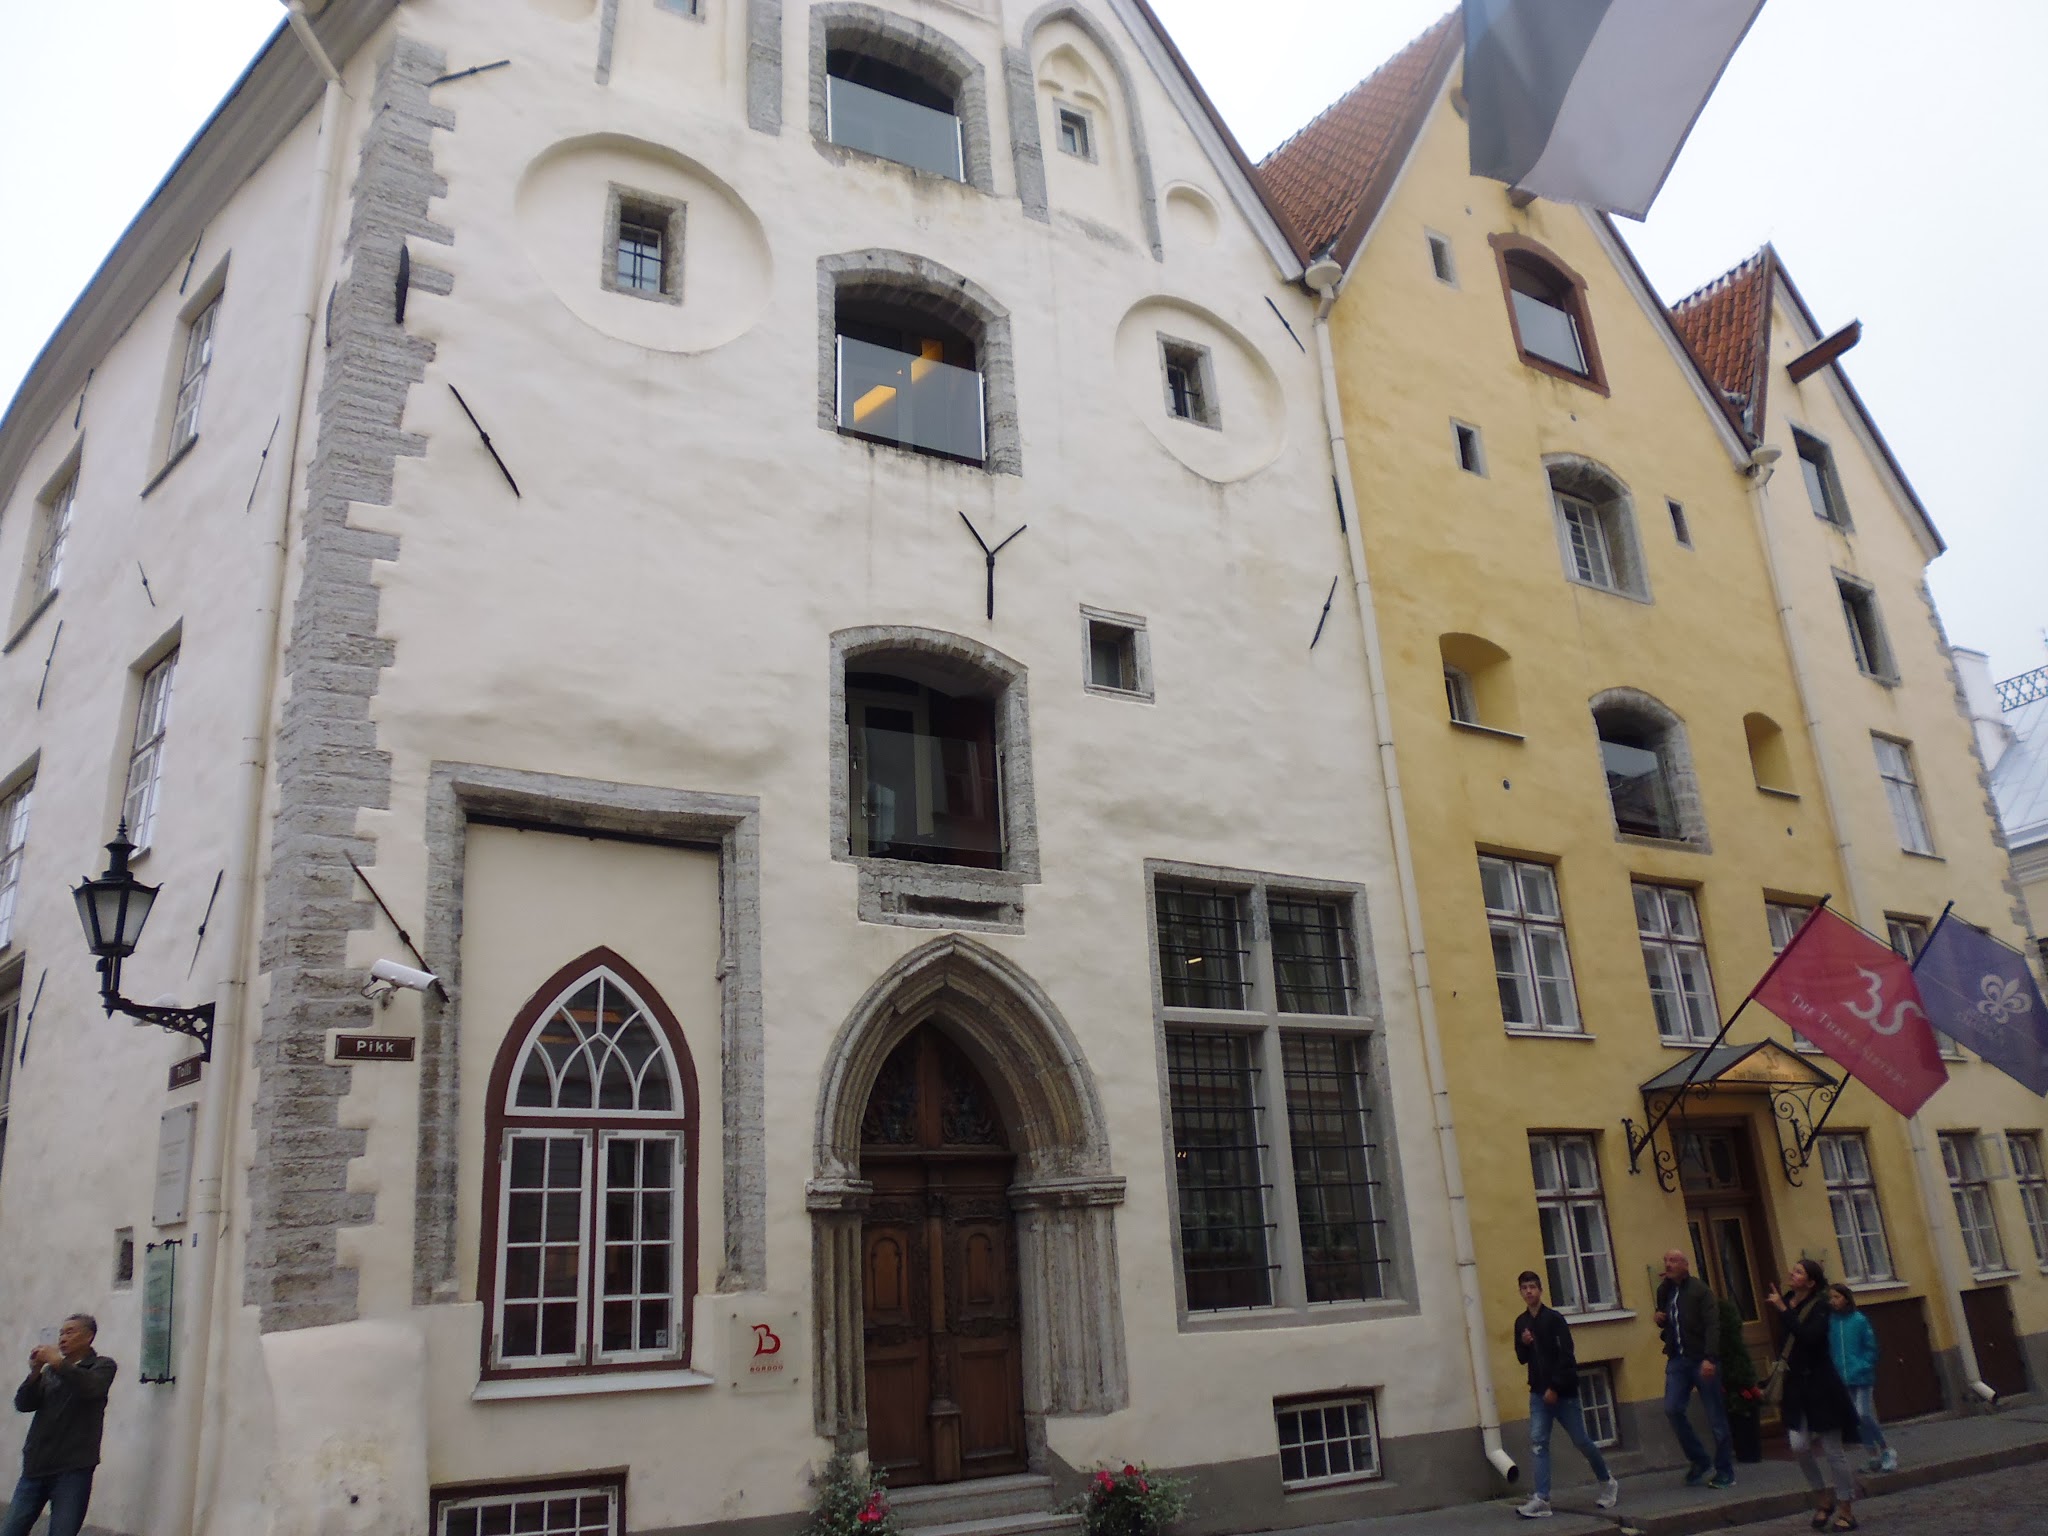 Kolm Öde, conjunto de casas conocido como "Tres Hermanas" (Tallinn) (Estonia) (@mibaulviajero)